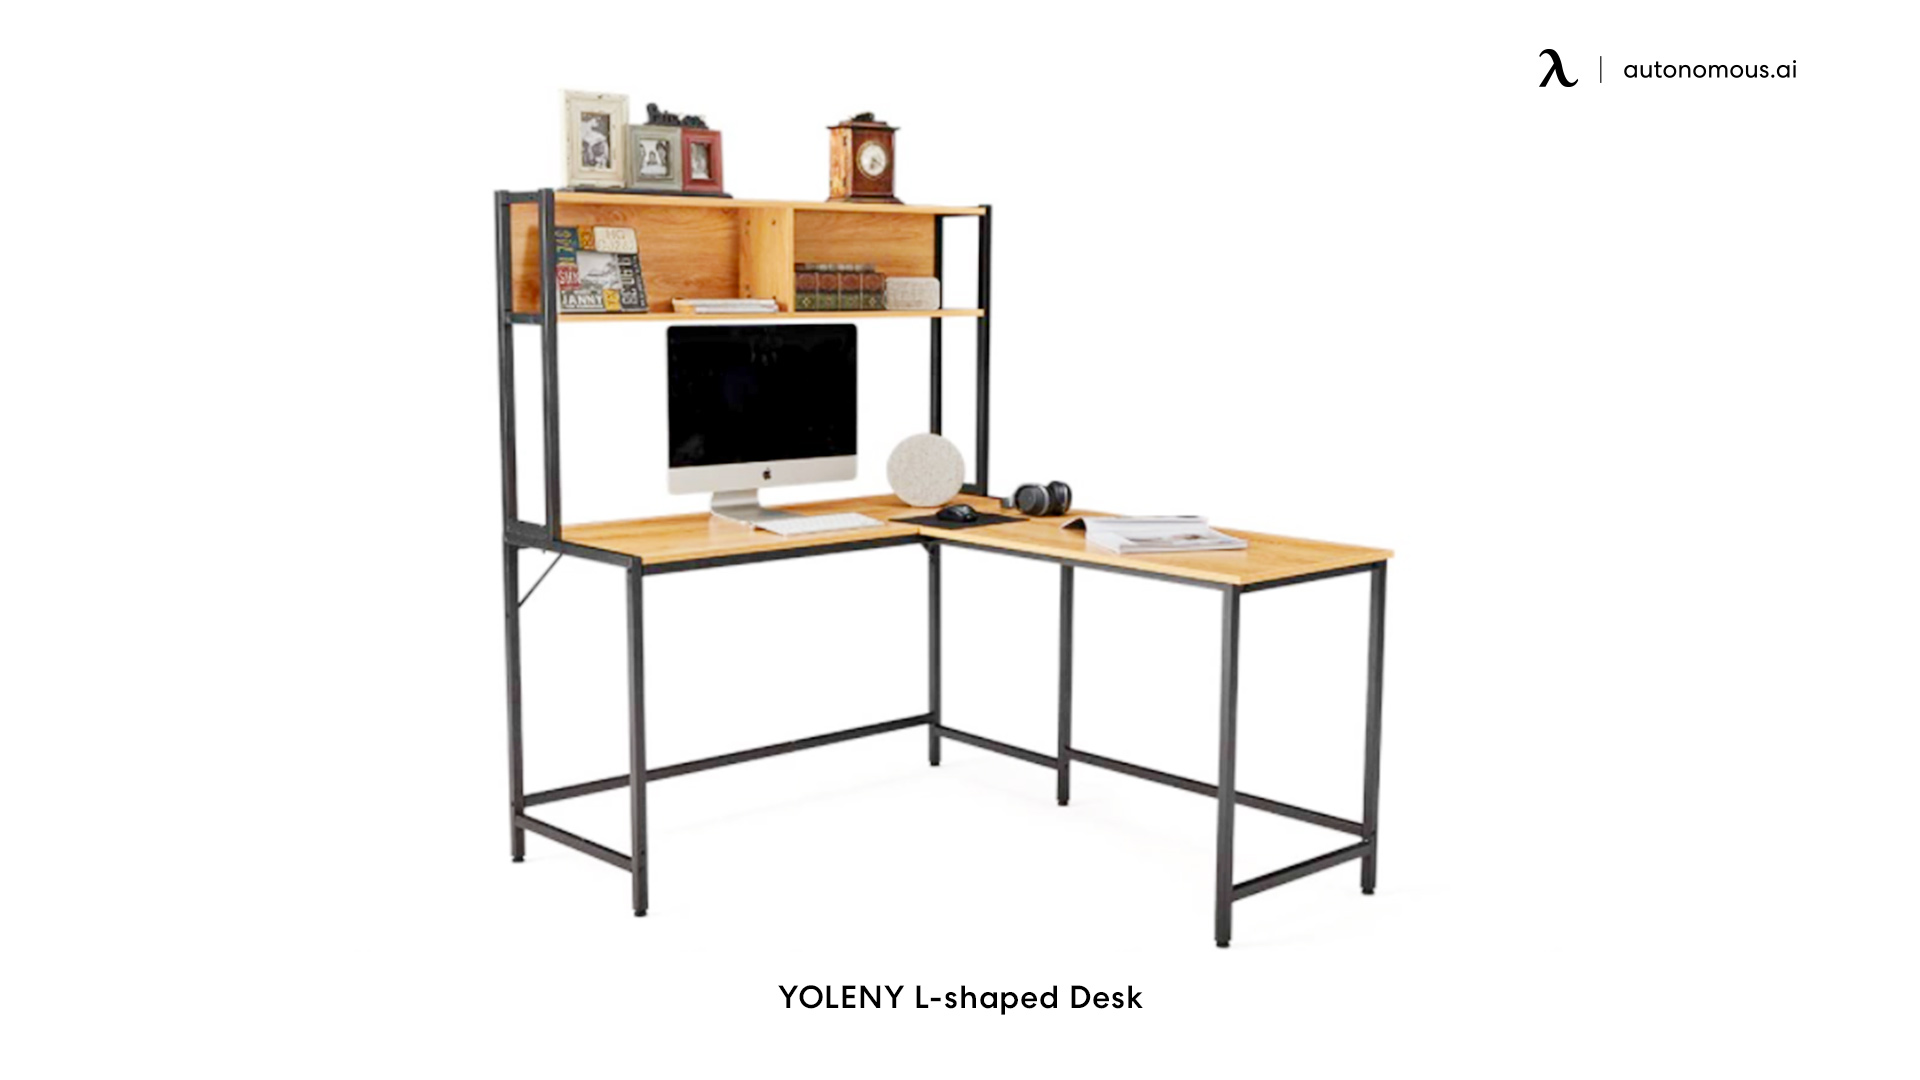 YOLENY L-shaped Desk